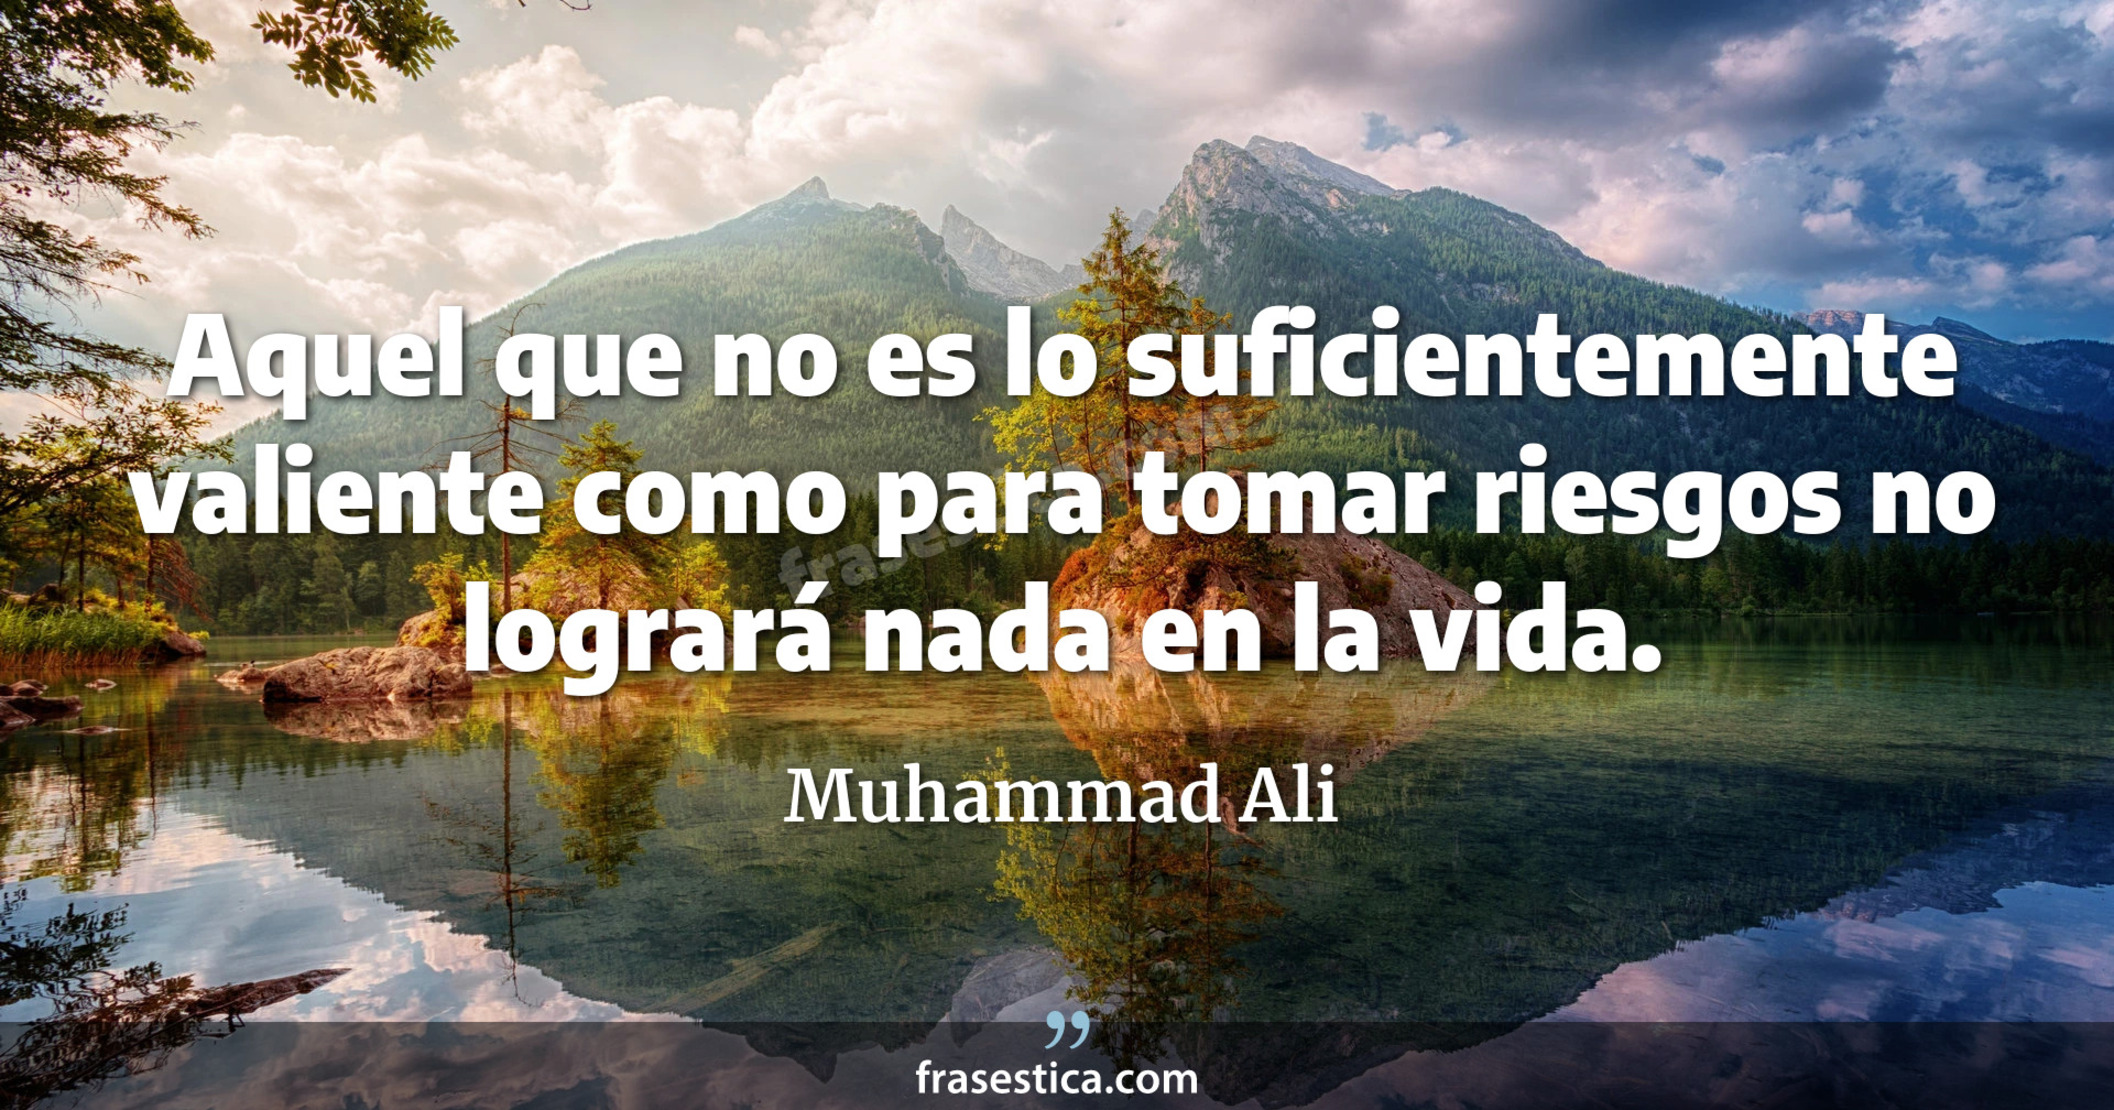 Aquel que no es lo suficientemente valiente como para tomar riesgos no logrará nada en la vida. - Muhammad Ali